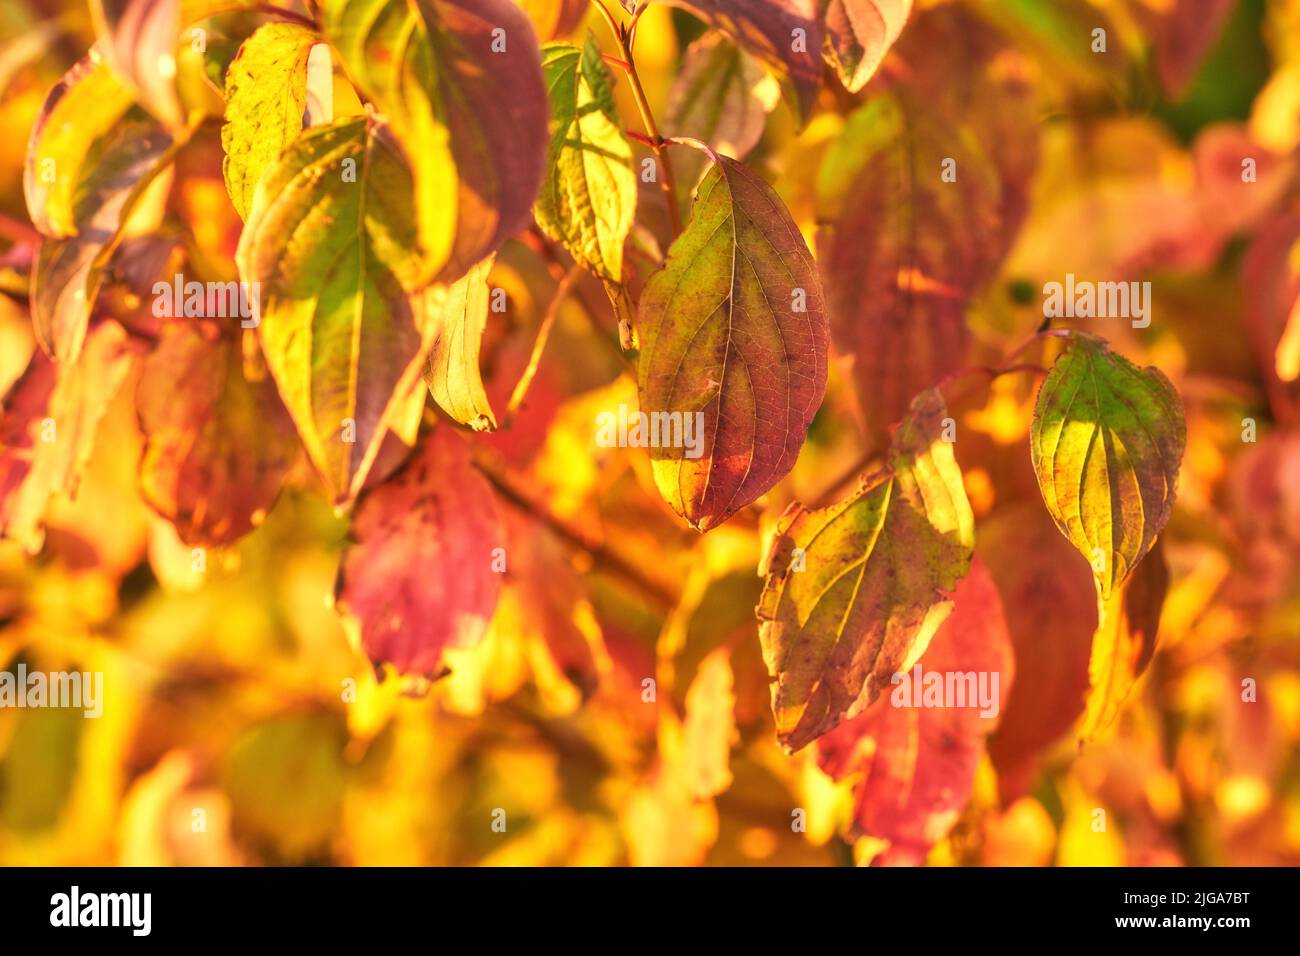 Nahaufnahme von bunten Herbstblättern, die in der Saison auf Ästen wachsen und Platz für Kopien bieten. Grüne, gelbe und braune Wildpflanzen wachsen auf Stängeln in einem Stockfoto